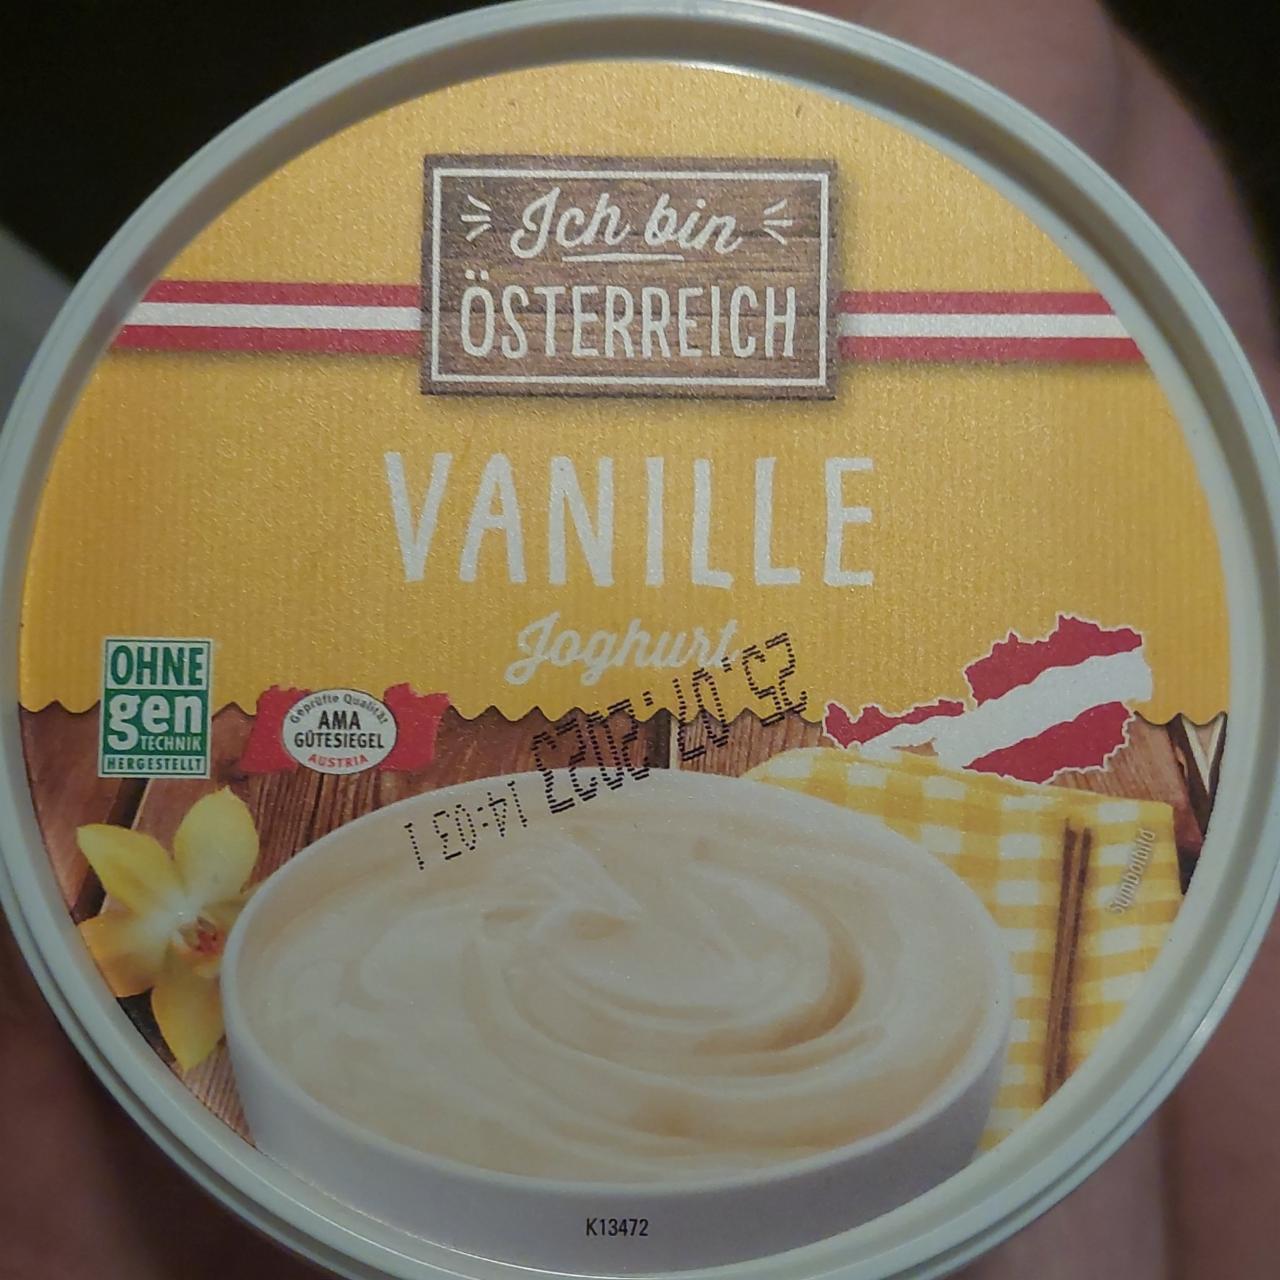 Fotografie - vanille jogurt Ich bin Österreich